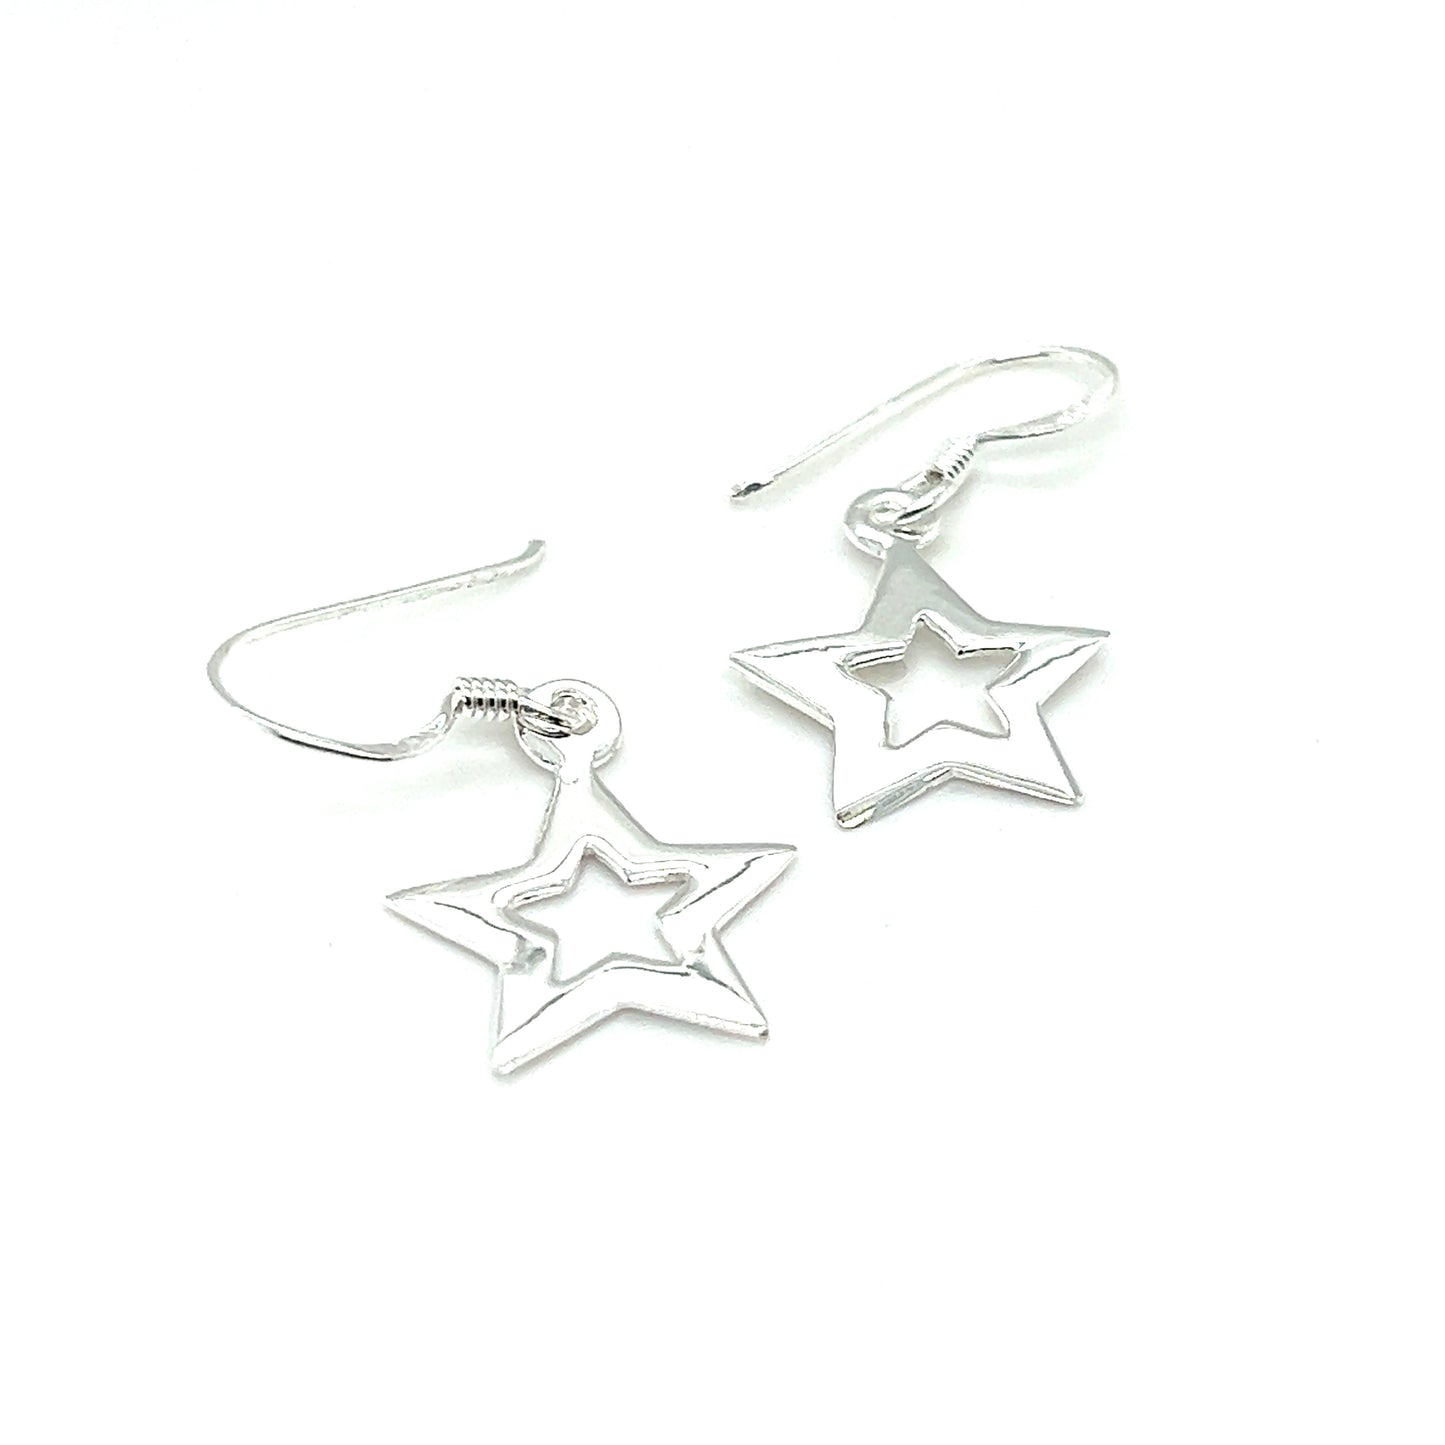 A pair of Super Silver Open Star Earrings shining against a white background, emitting celestial splendor.